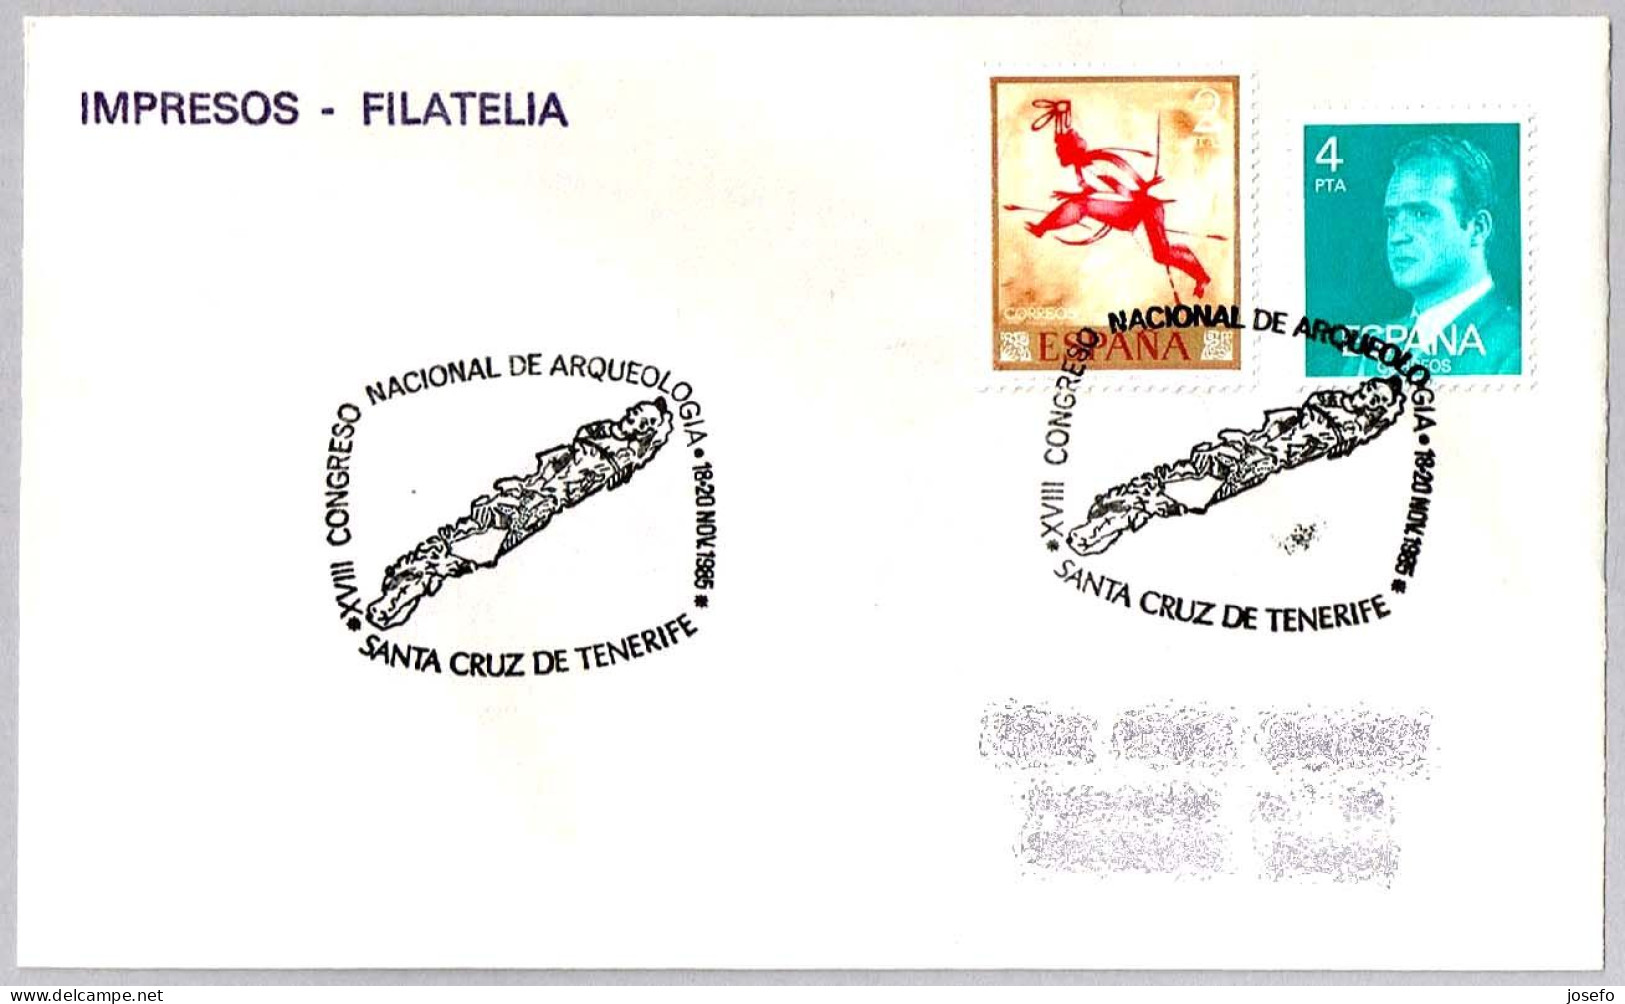 CONGRESO NACIONAL DE ARQUEOLOGIA - Arquelology National Congress. S.C.Tenerife, Canarias, 1985 - Archéologie